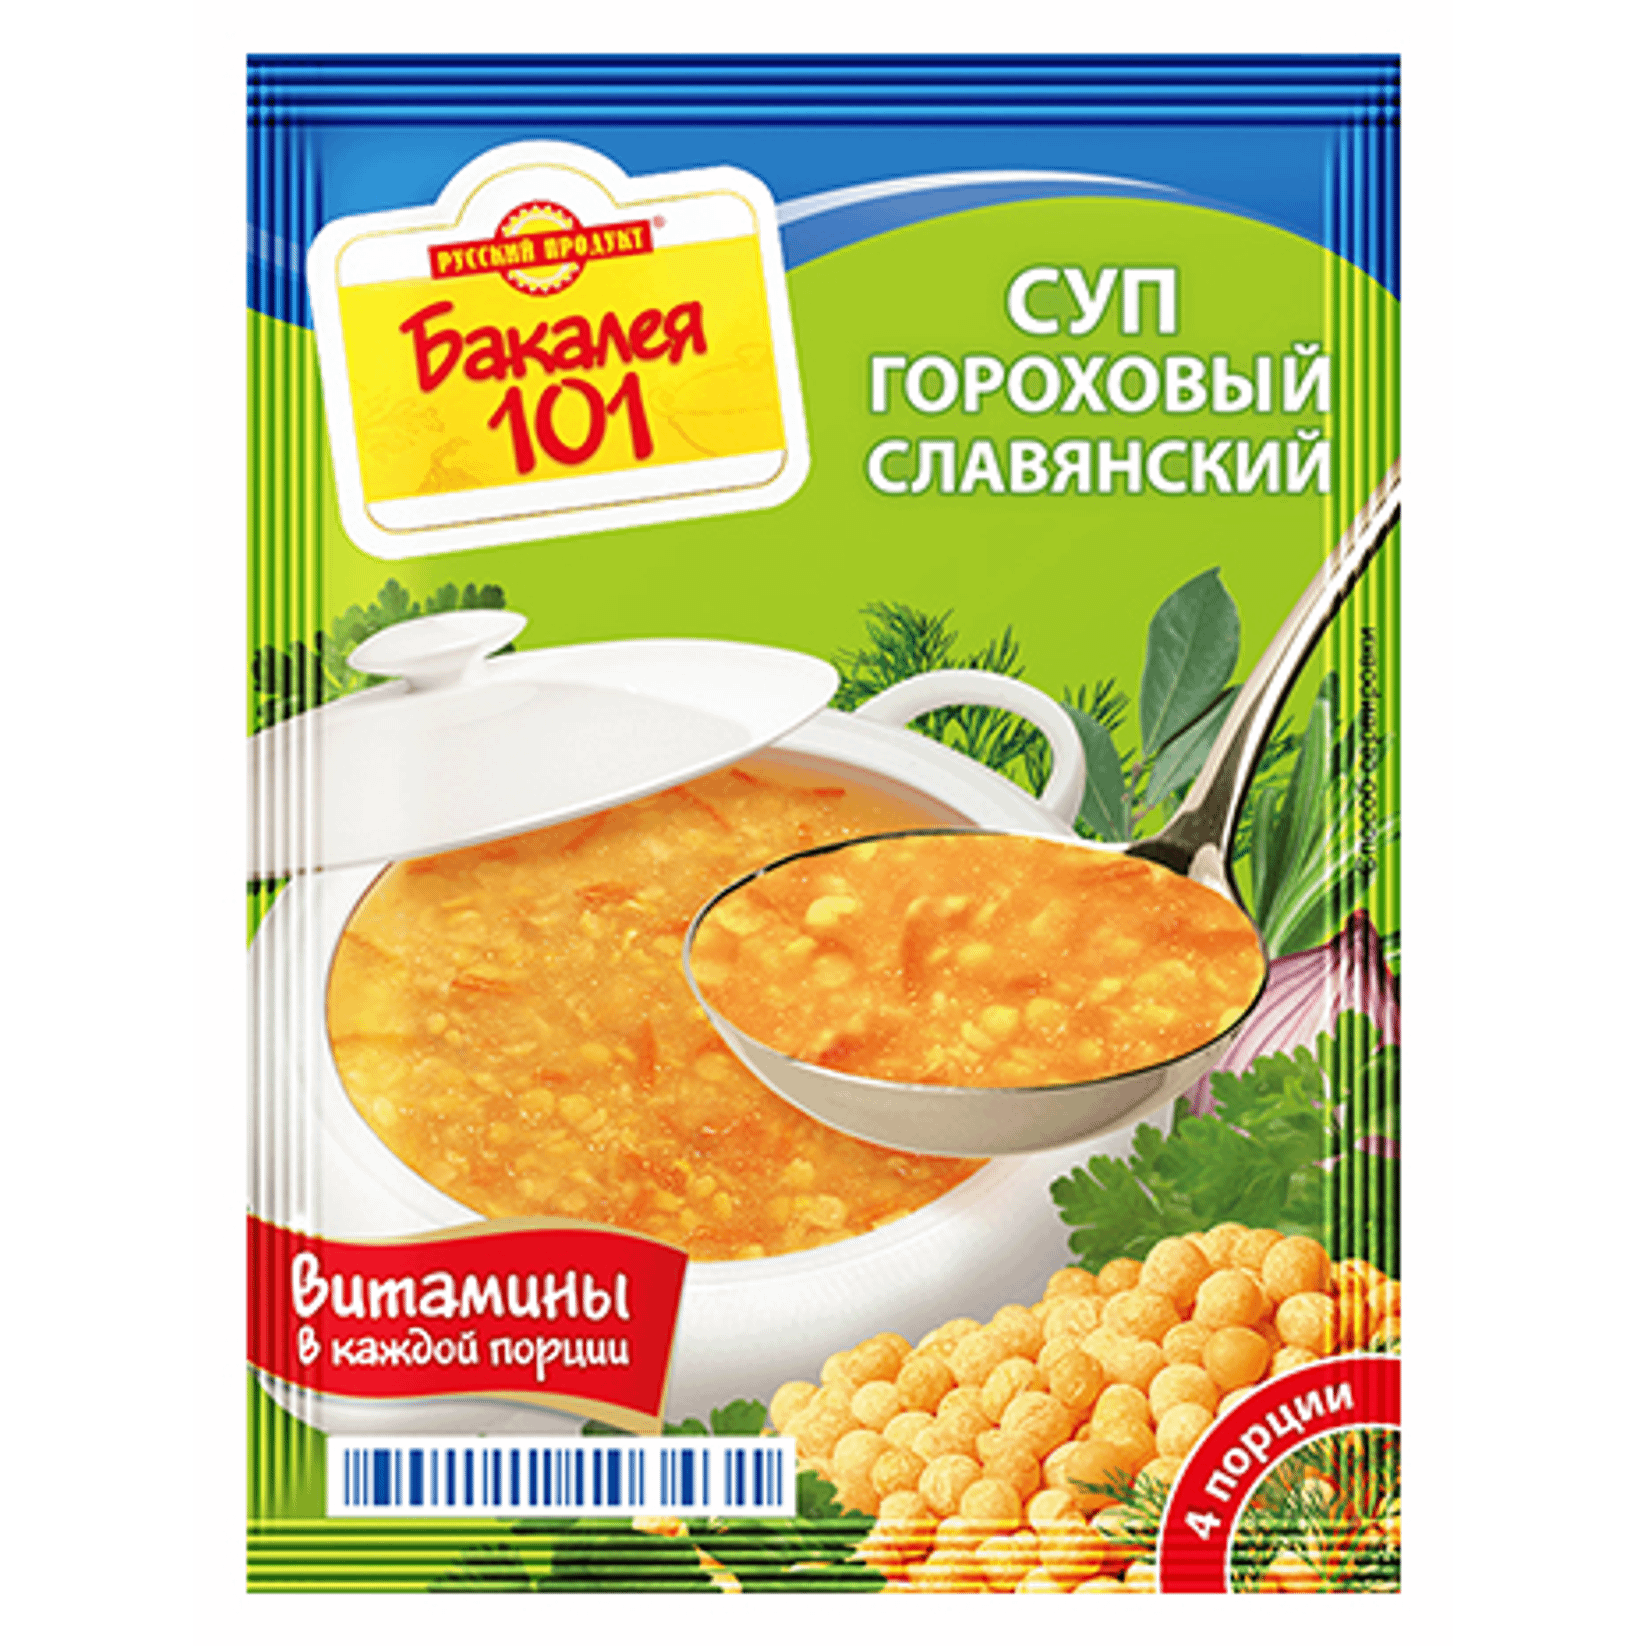 Суп Русский Продукт Бакалея 101 Славянский гороховый 65 г